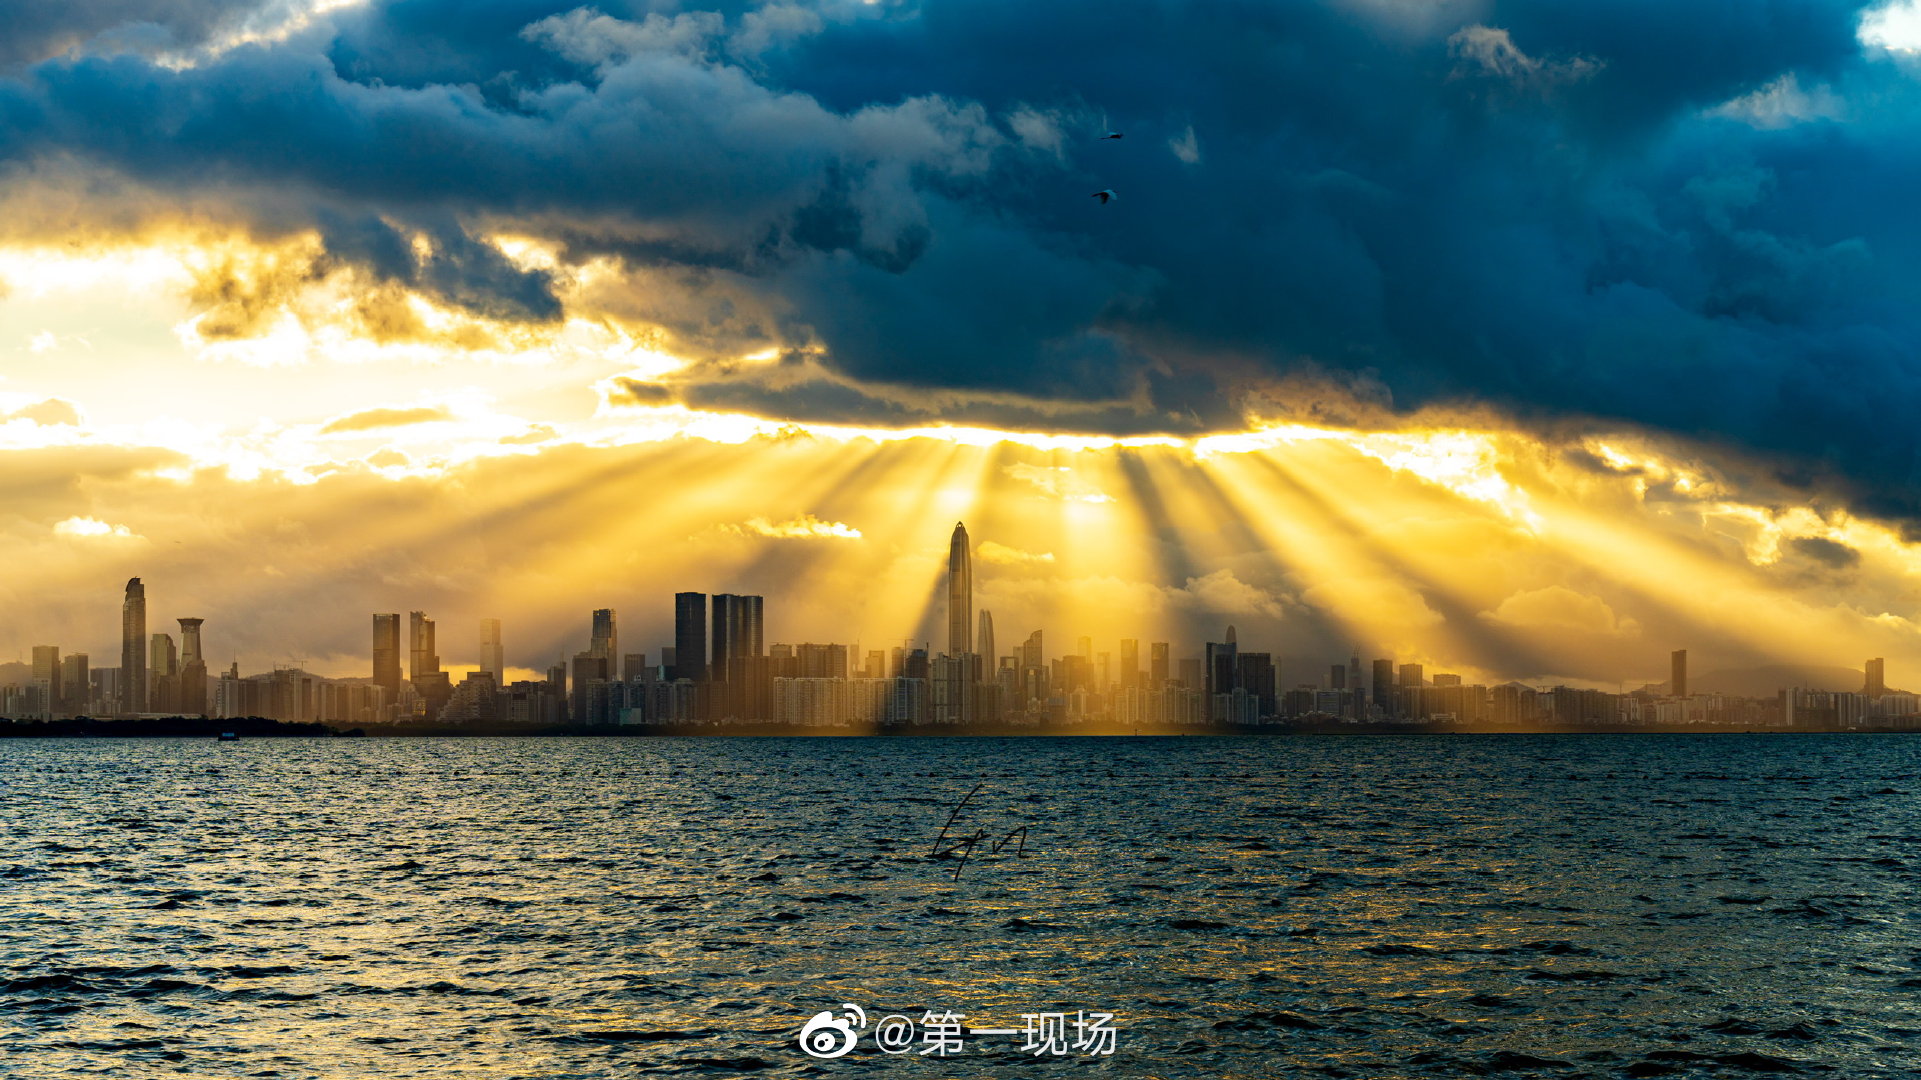 近日深圳天空出现了丁达尔现象一缕缕阳光撒向大地